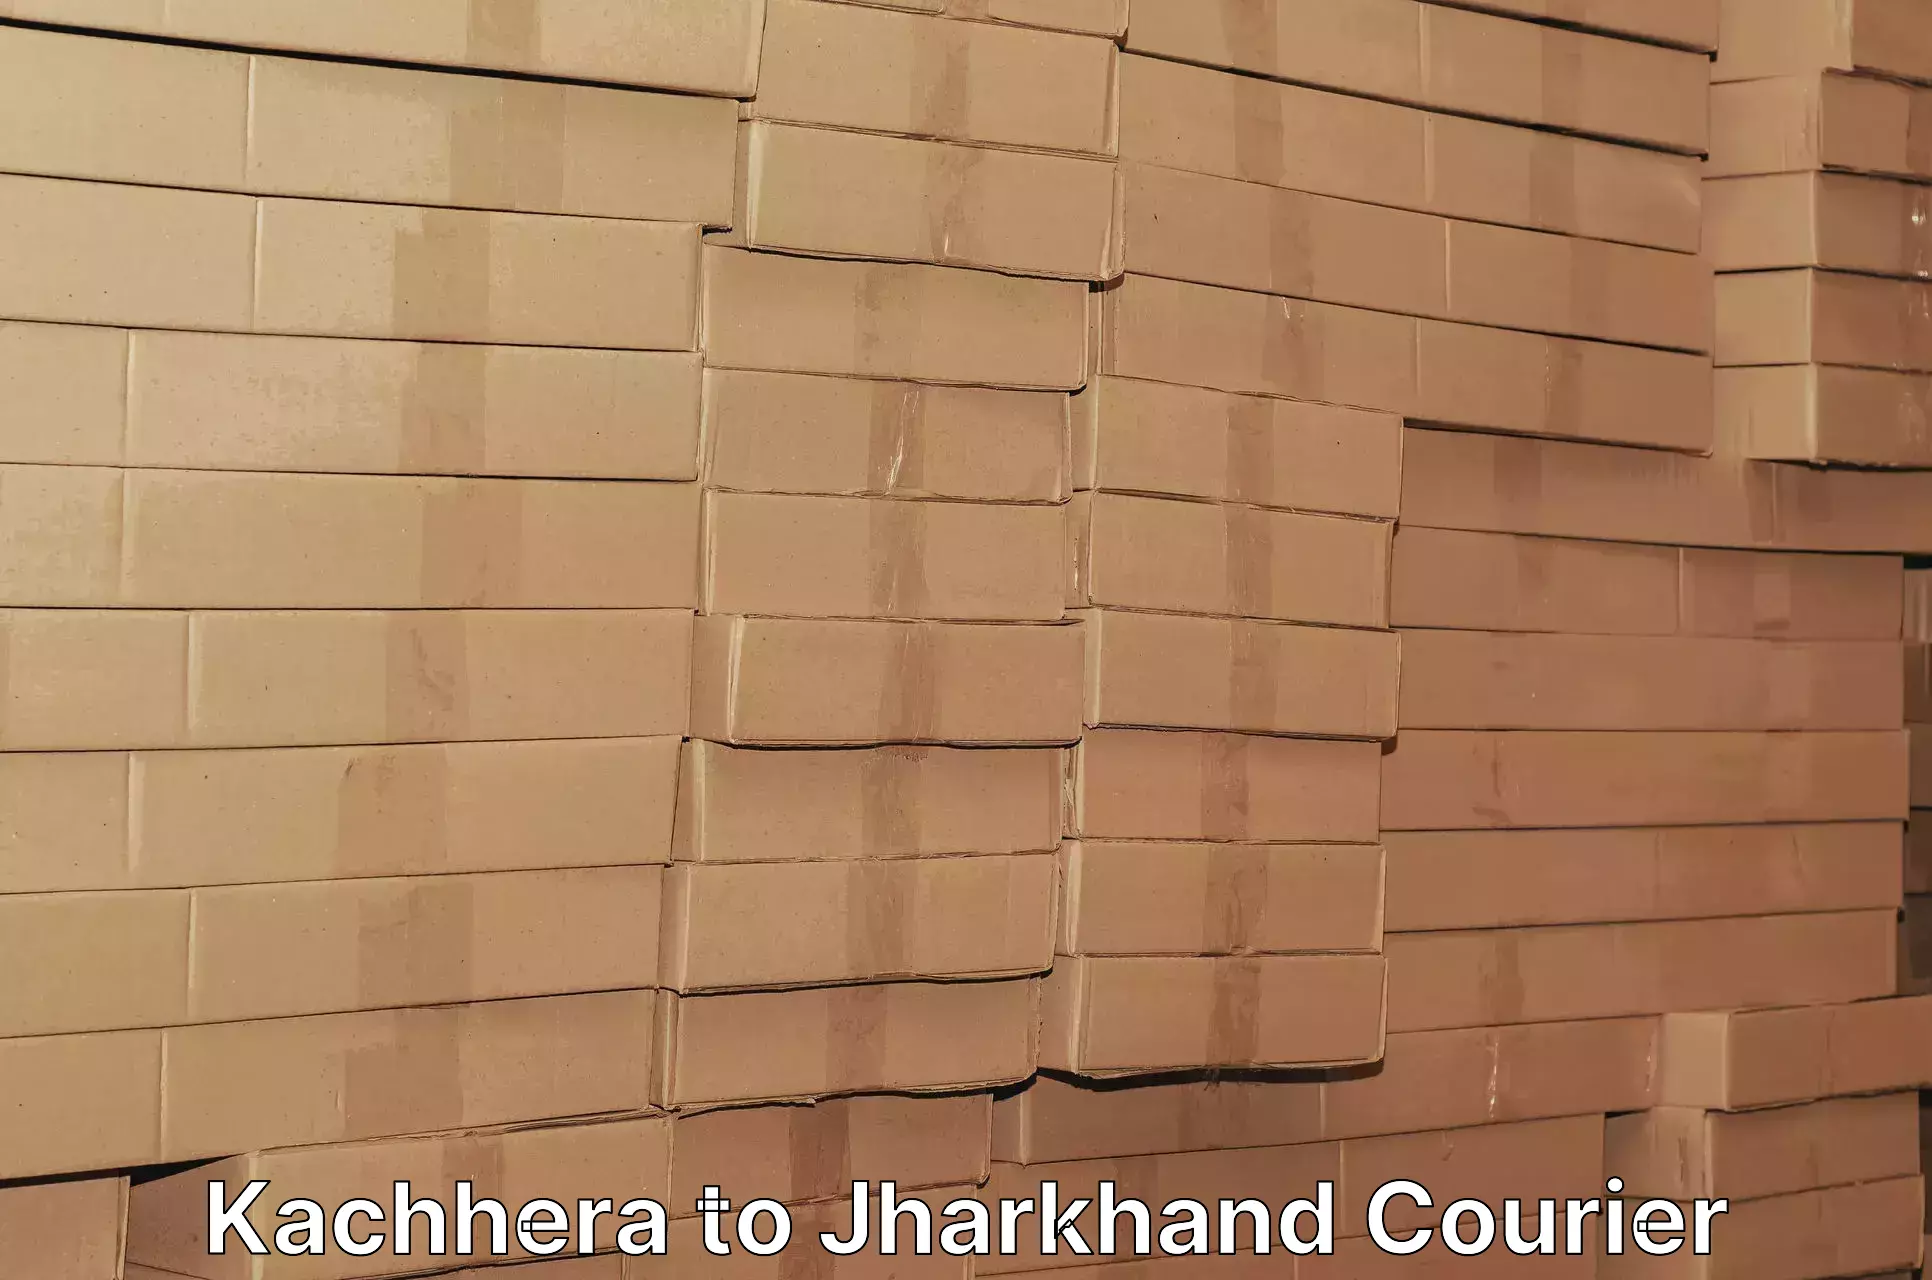 Customized shipping options Kachhera to Jharkhand